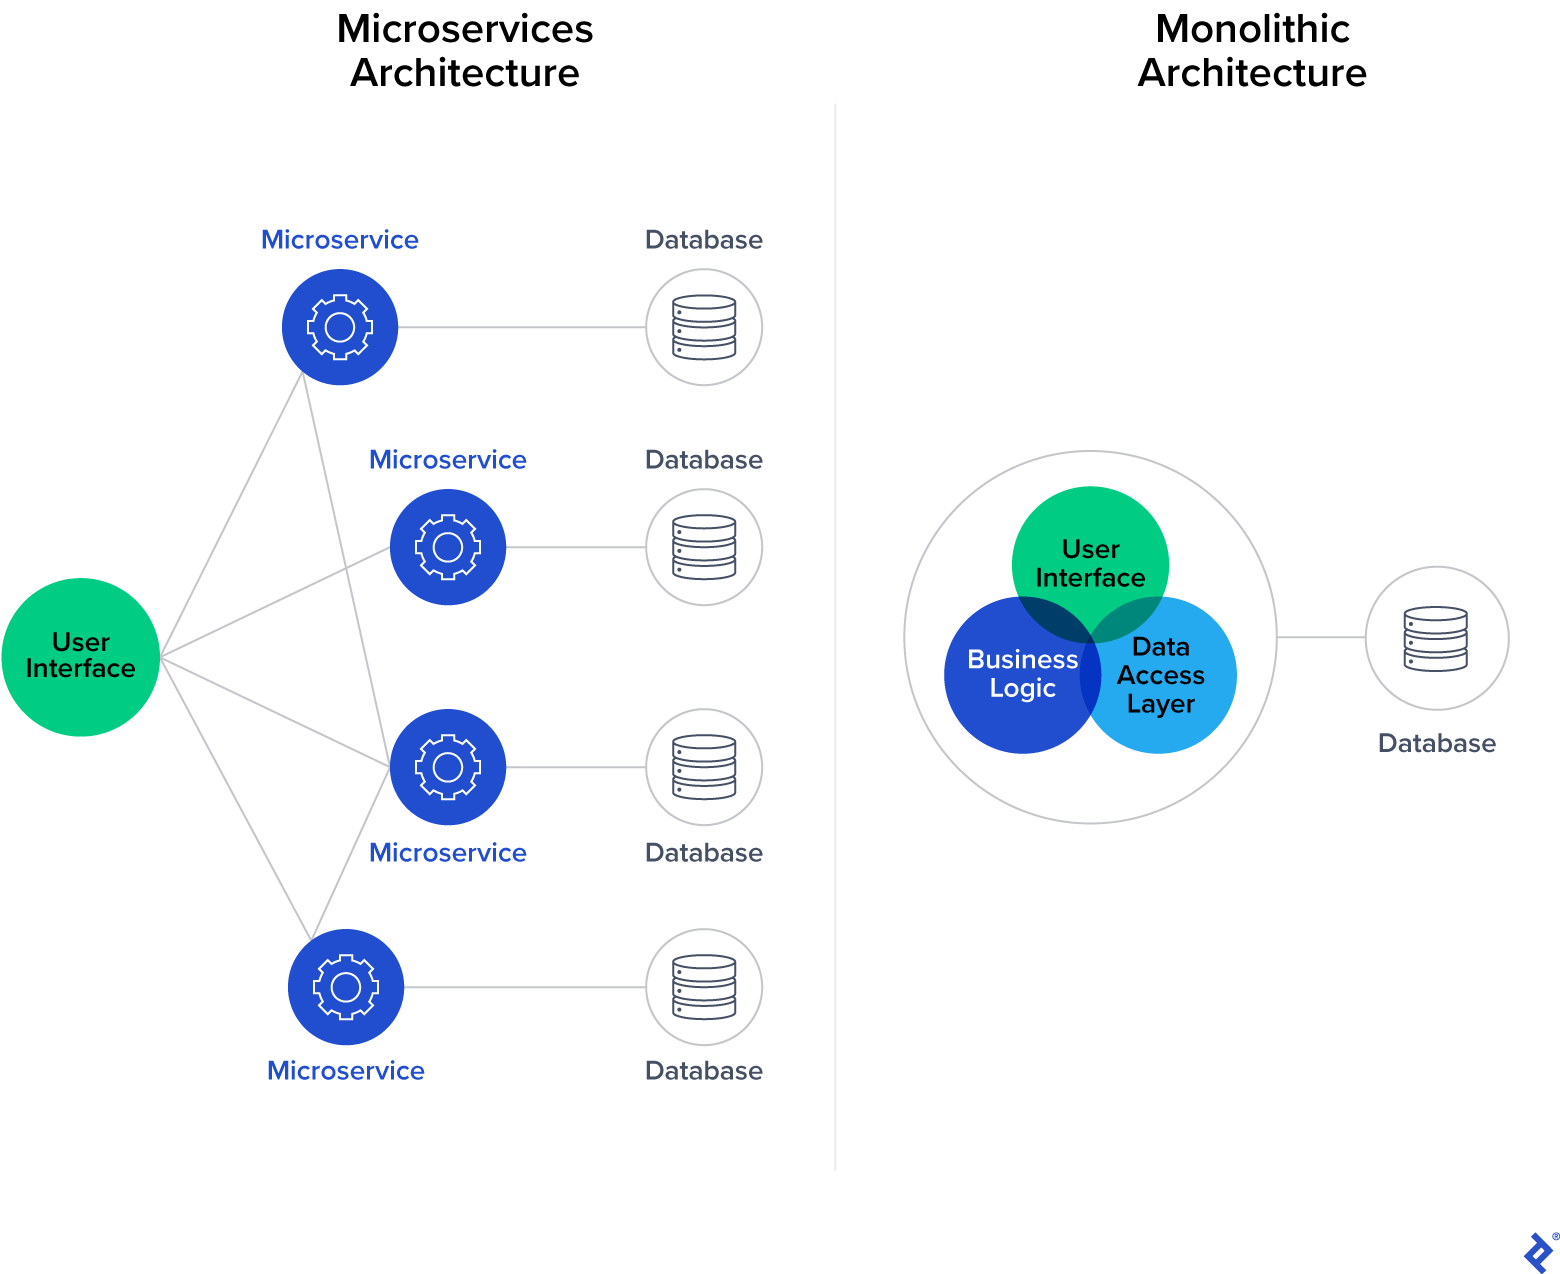 معماری میکروسرویس ها (با رابط کاربری جداگانه به میکروسرویس های جداگانه متصل شده است) در مقابل معماری یکپارچه (با منطق و رابط کاربری متصل).